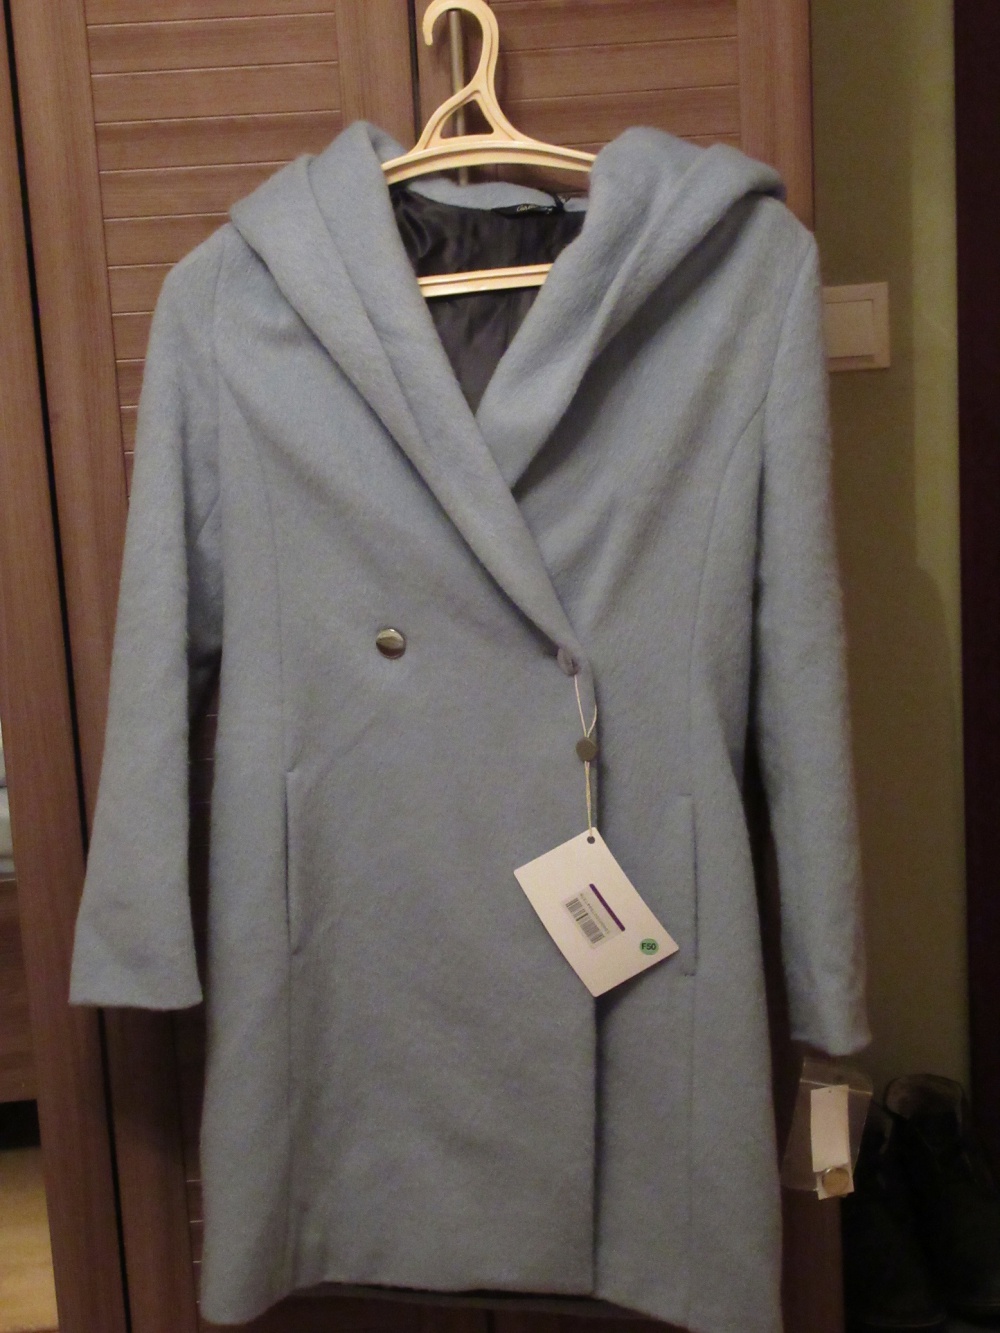 Демисезонное пальто CARLA G. 44 размер (голубое)